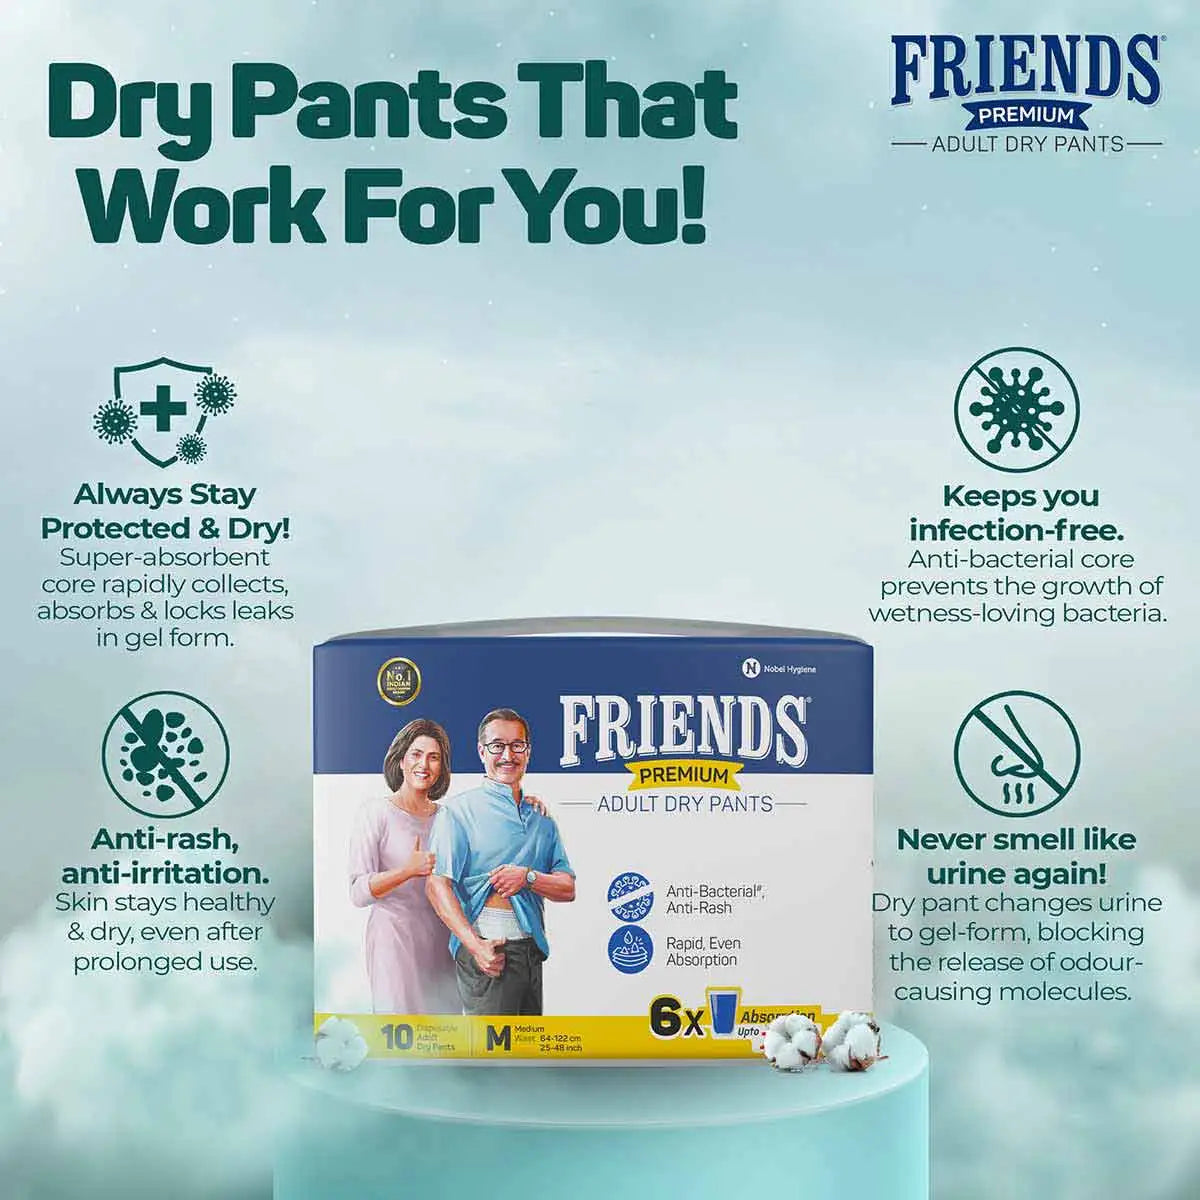 Friends Premium Adult Dry Pants